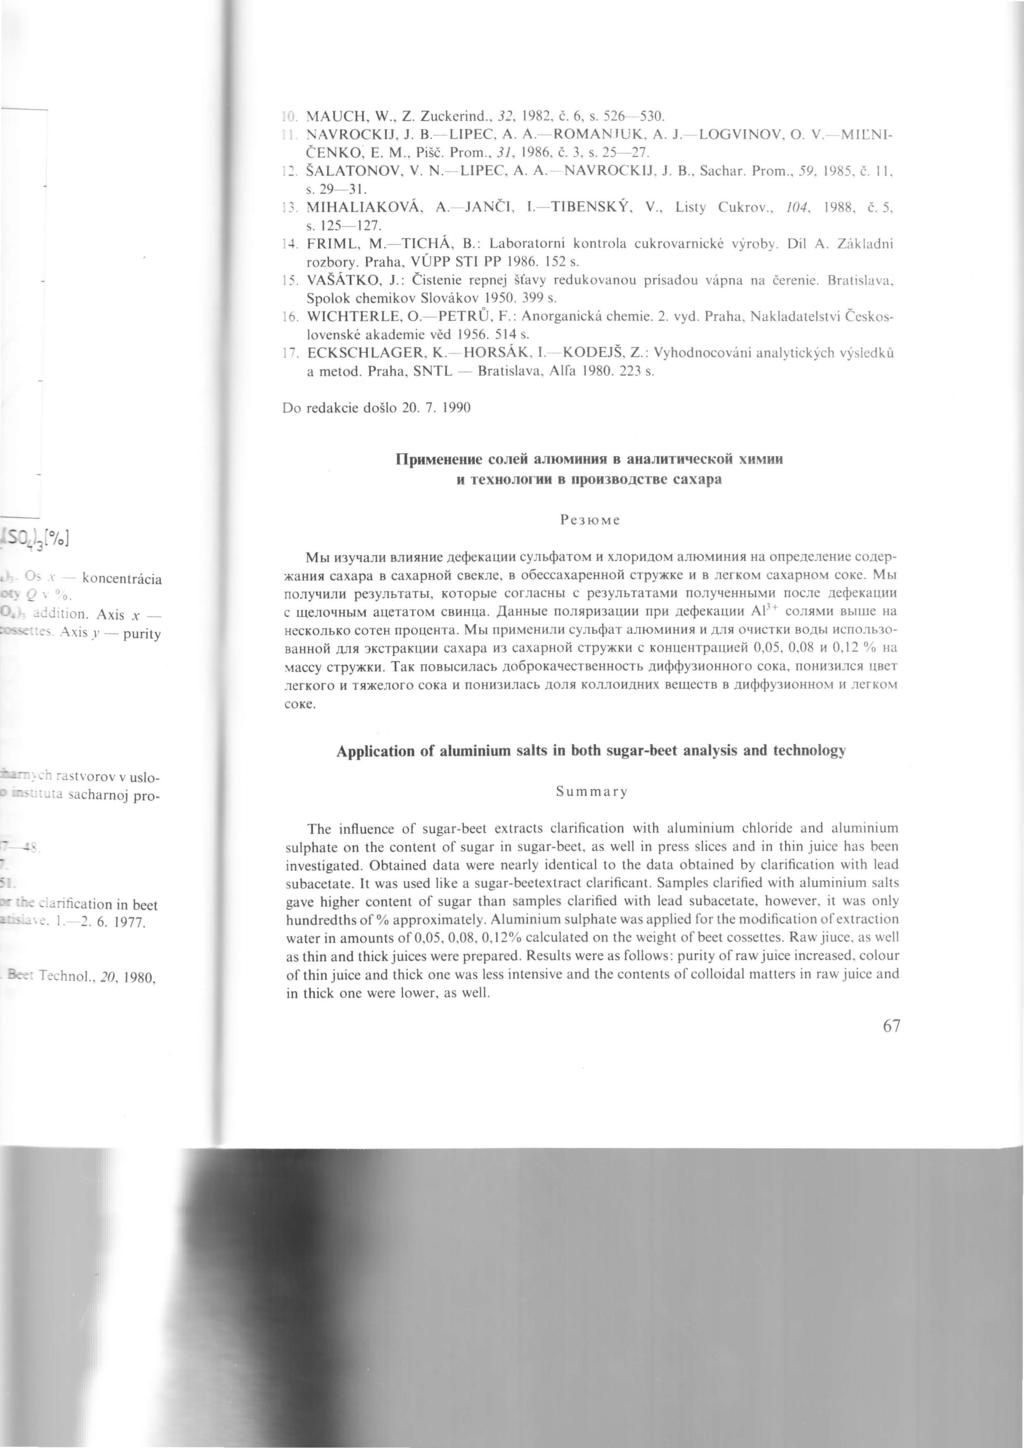 1l l5 l6 l1 MAUCH, V,/., Z. Zuckerind.. 12, 1982, d. 6, s. 526530. NAVROCKIJ, J. B. LIPEC. A. A.ROMAN.IUK, A. J. LOGVINOV. O. V. MILNI. e ENKO, E. M., Pisd. Prom.. J,l, I986. d. 3, s.252'7. srinronov.